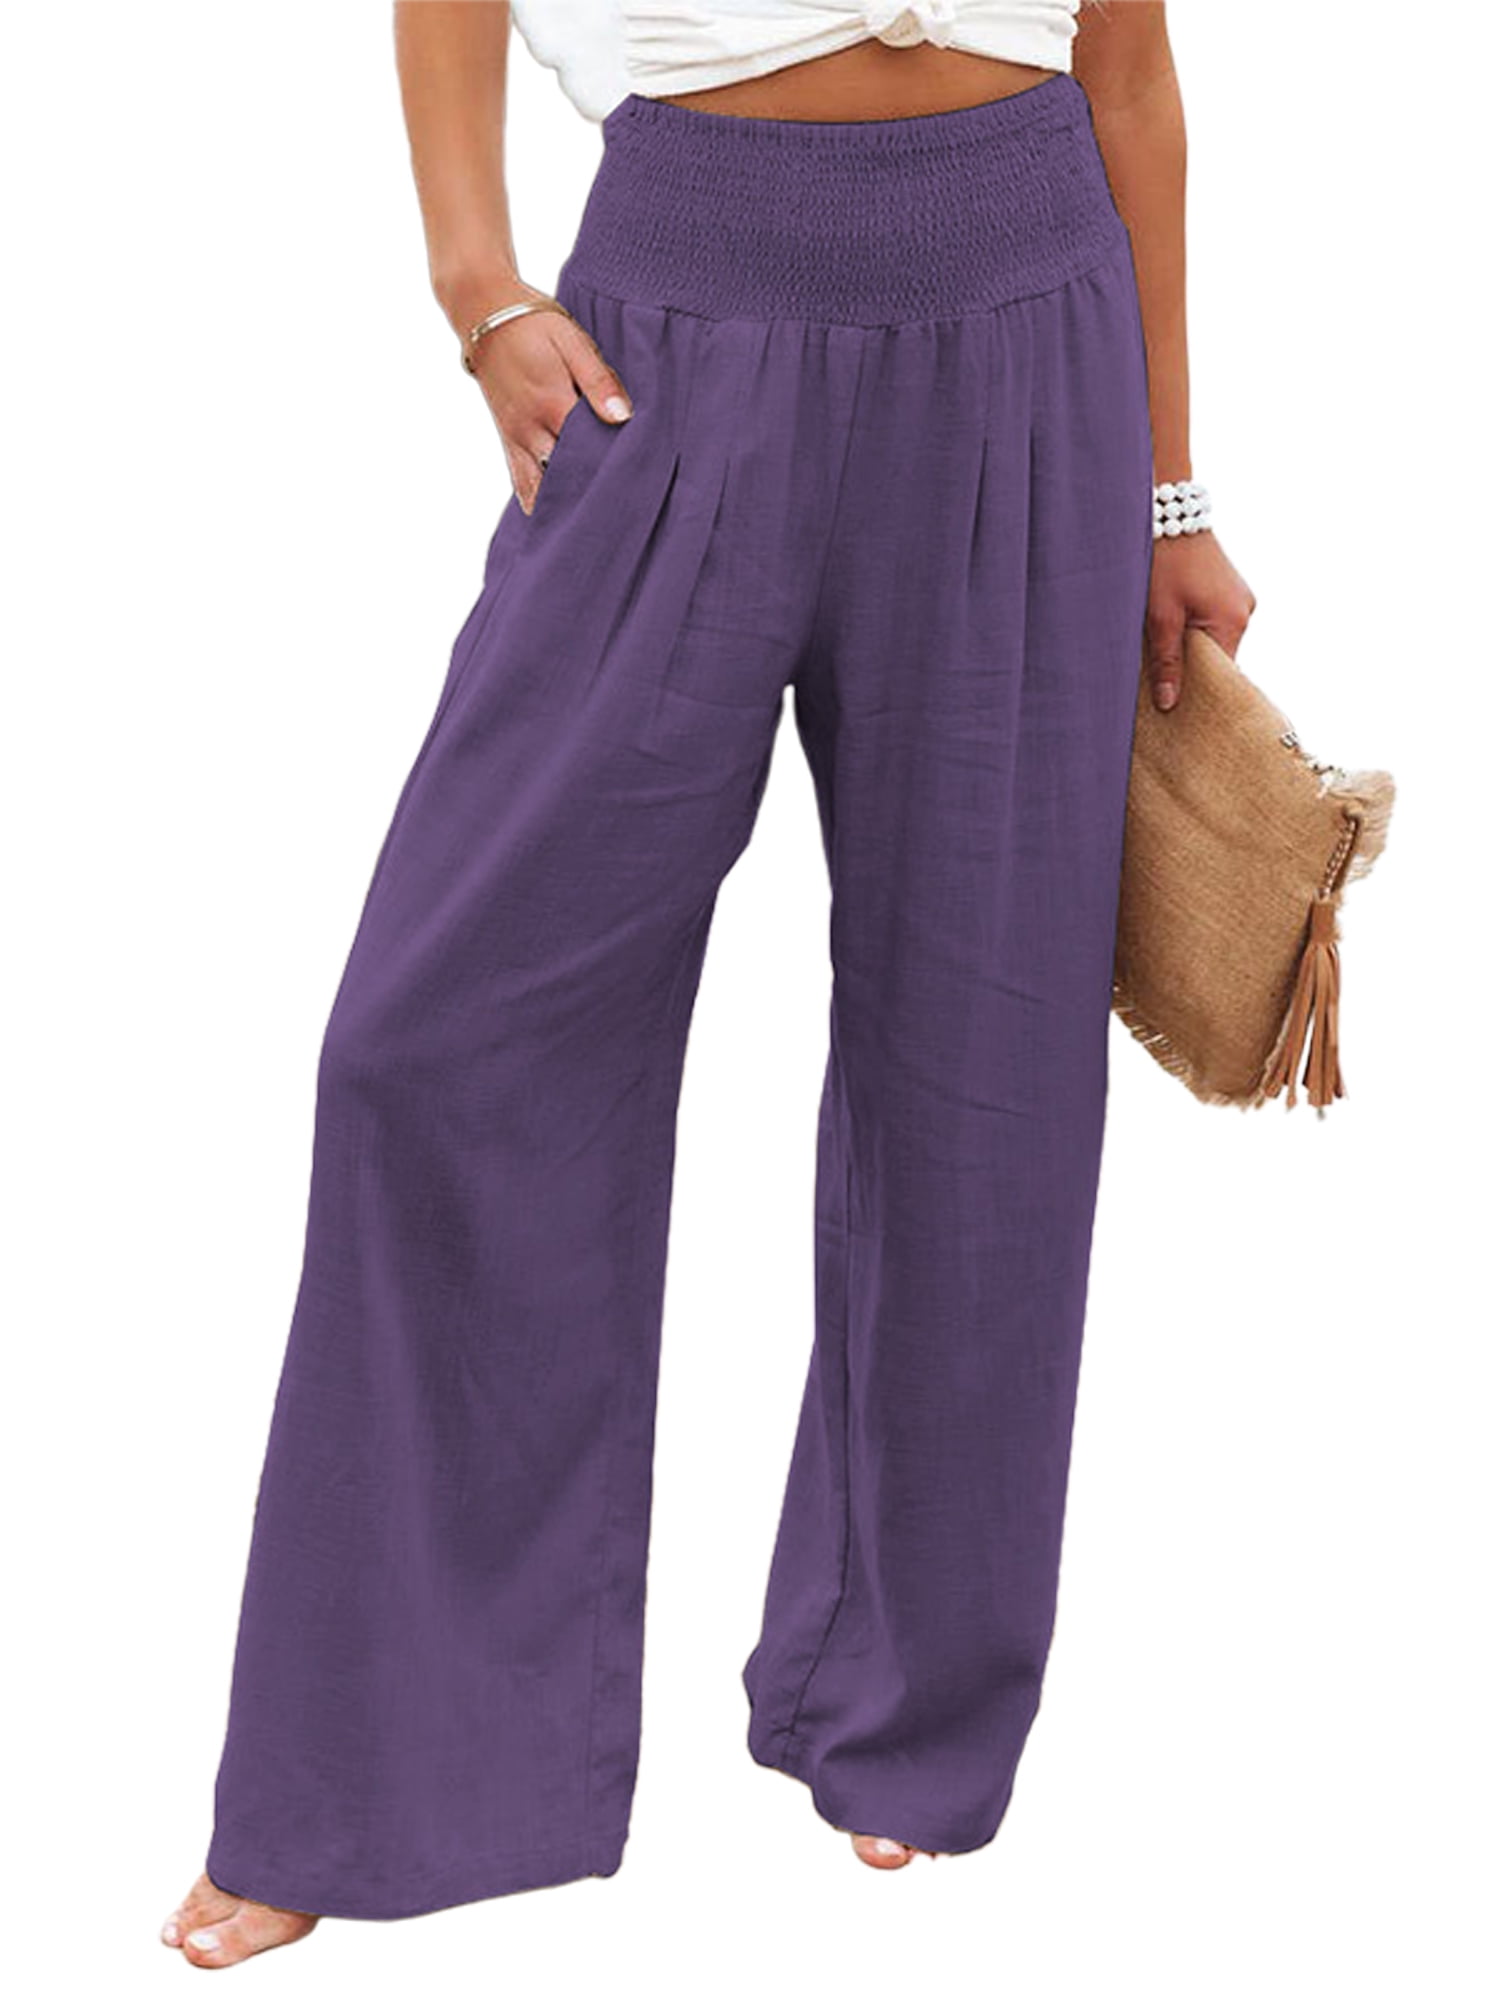 Vintage Style Ethnic Ladies Linen Cotton Wide Leg Pants Elastic Waist  Trousers | eBay